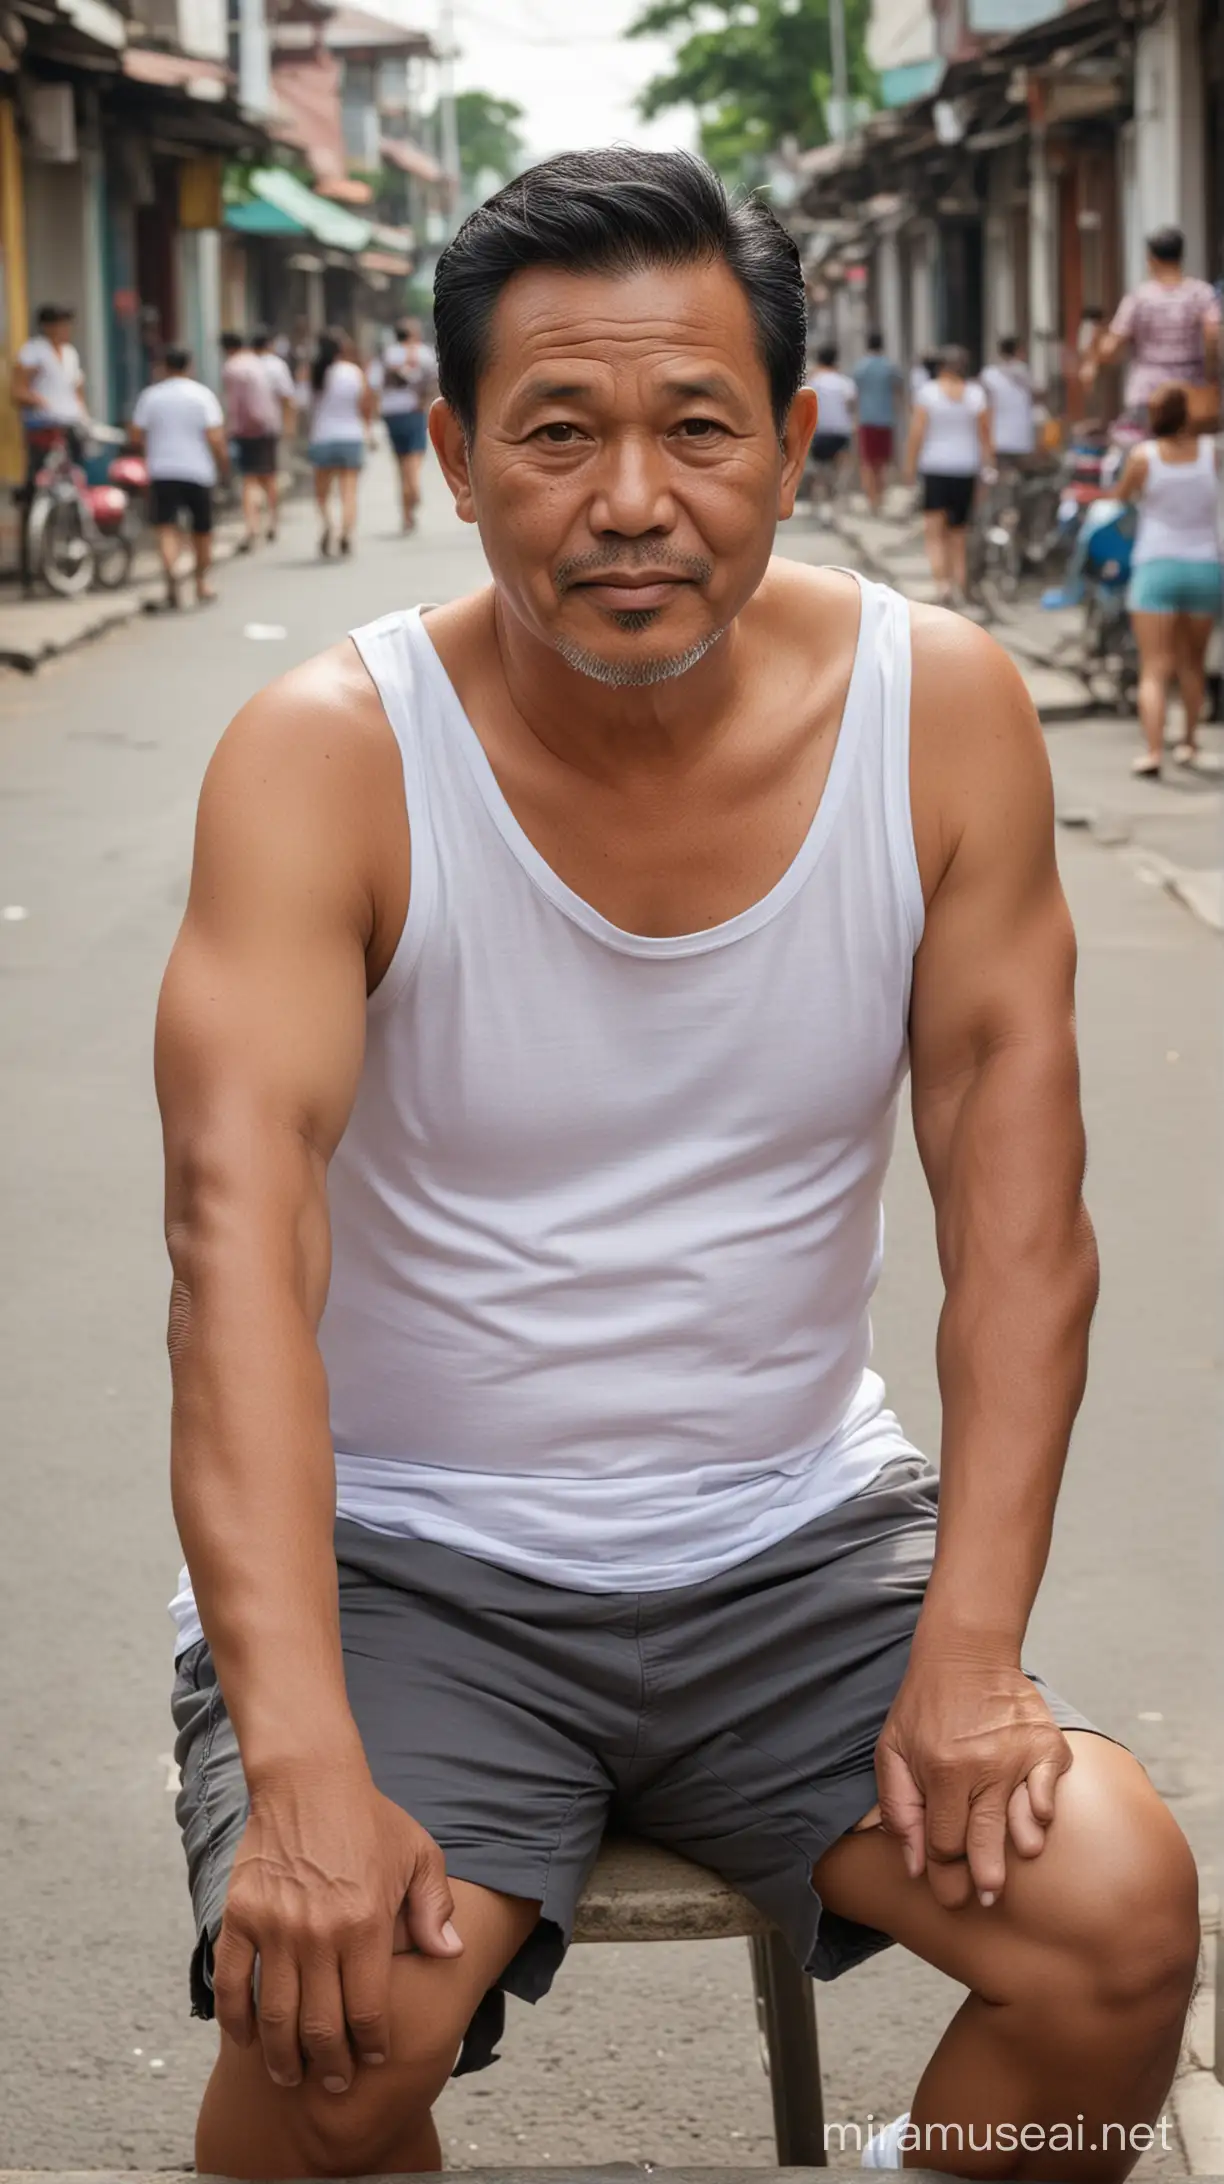 Foto realistis,bapak bapak indonesia usia 55 tahun badan gemuk,rambut hitam rapi belah tepi,memakai baju tank top putih dan celana pendek tipis,sedang duduk di jalan yang sepi,latar belakang orang jiging